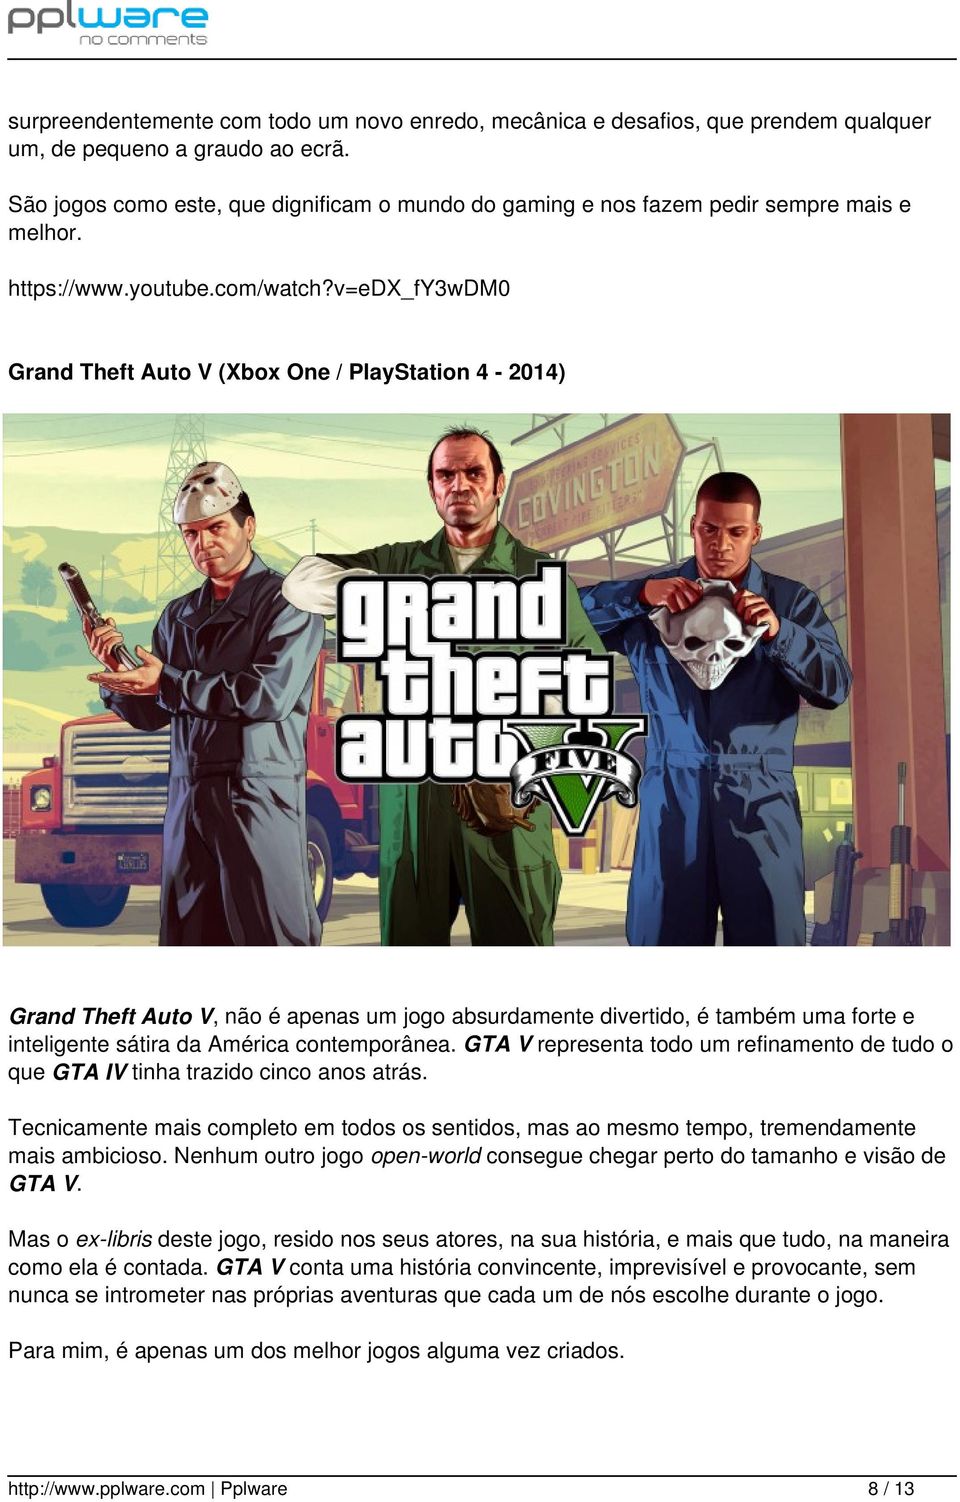 v=edx_fy3wdm0 Grand Theft Auto V (Xbox One / PlayStation 4-2014) Grand Theft Auto V, não é apenas um jogo absurdamente divertido, é também uma forte e inteligente sátira da América contemporânea.